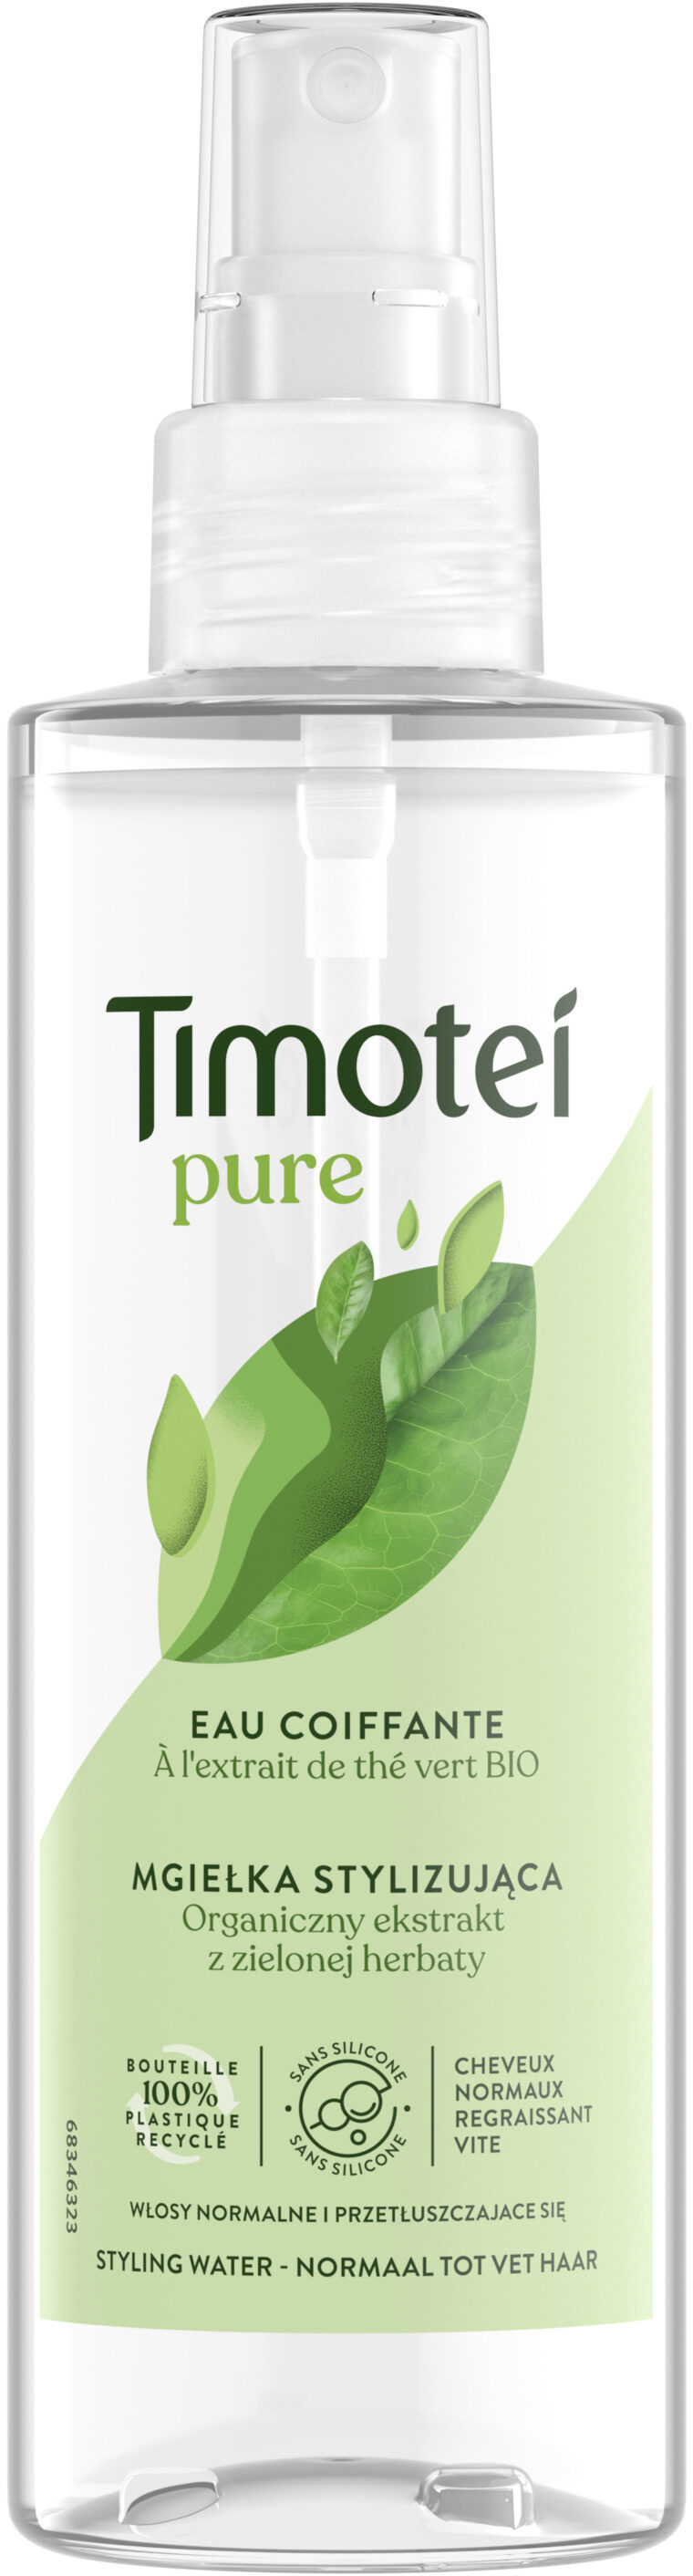 Timotei Eau Coiffante Pure 150ml - Produkt - fr